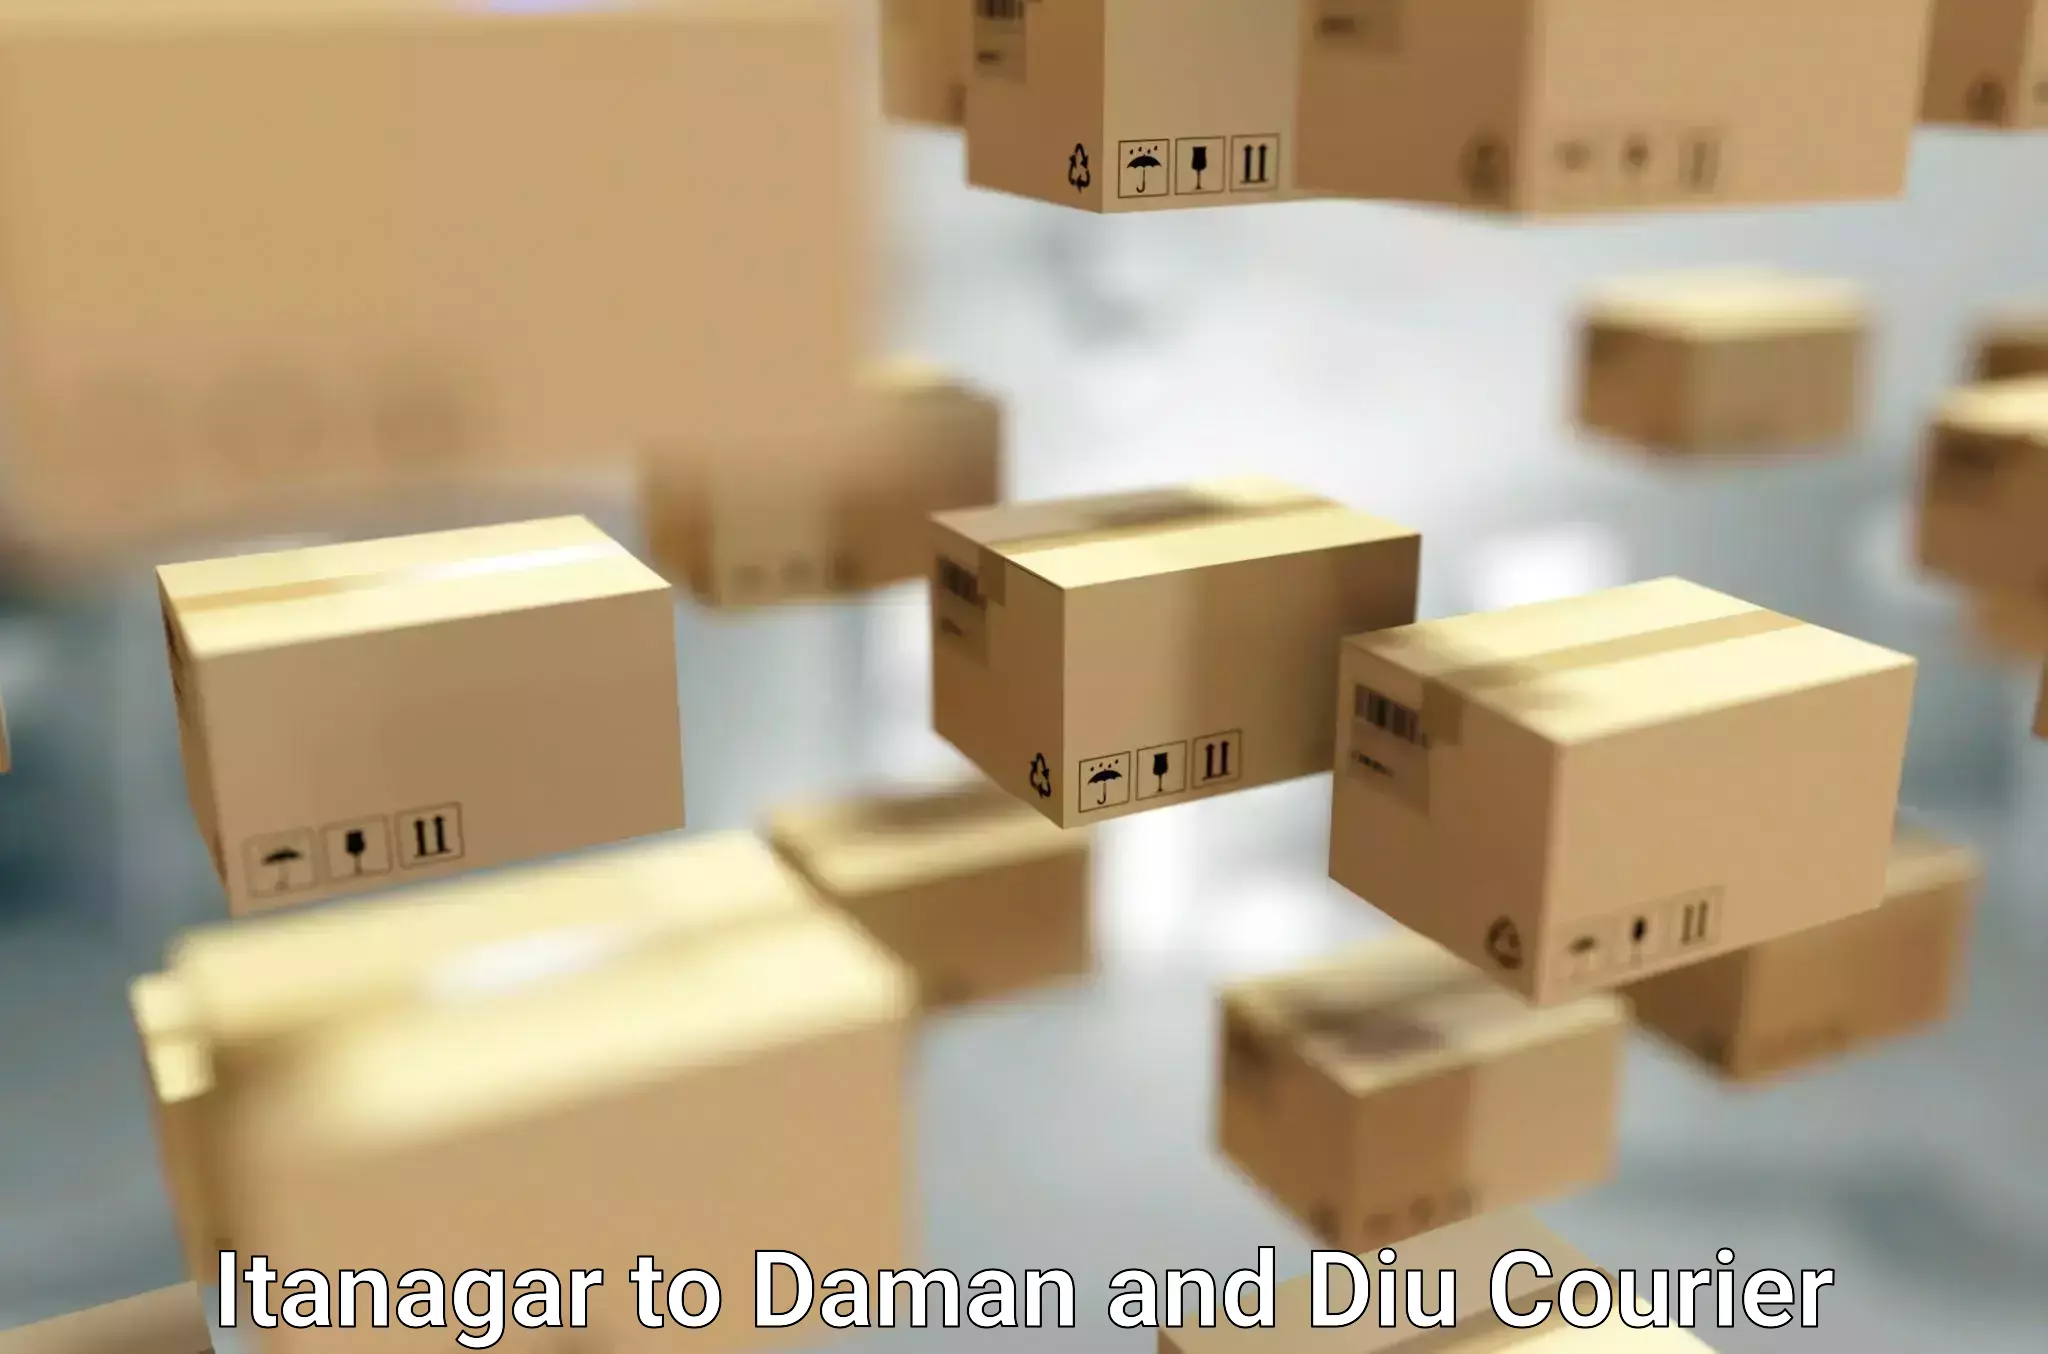 Furniture transport professionals Itanagar to Daman and Diu